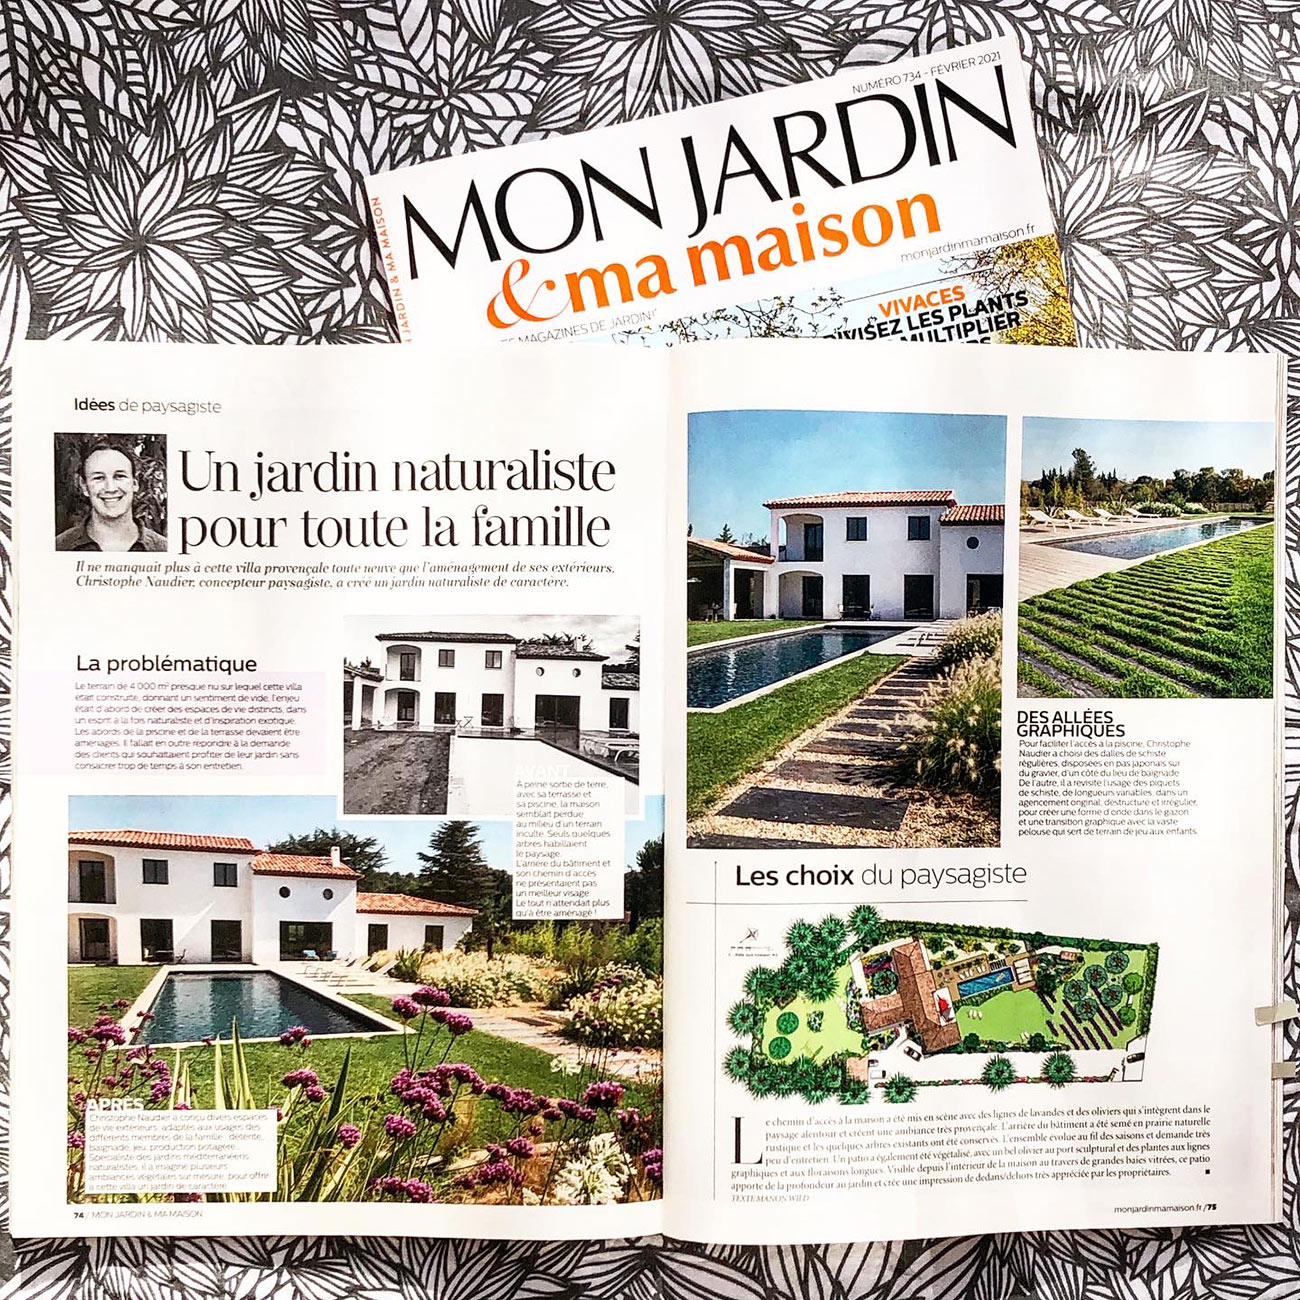 Atelier Naudier - Architecte paysagiste concepteur - Montpellier & Aix-en-Provence - Mon jardin & ma maison - Page 1 & 2 - aménagement jardin